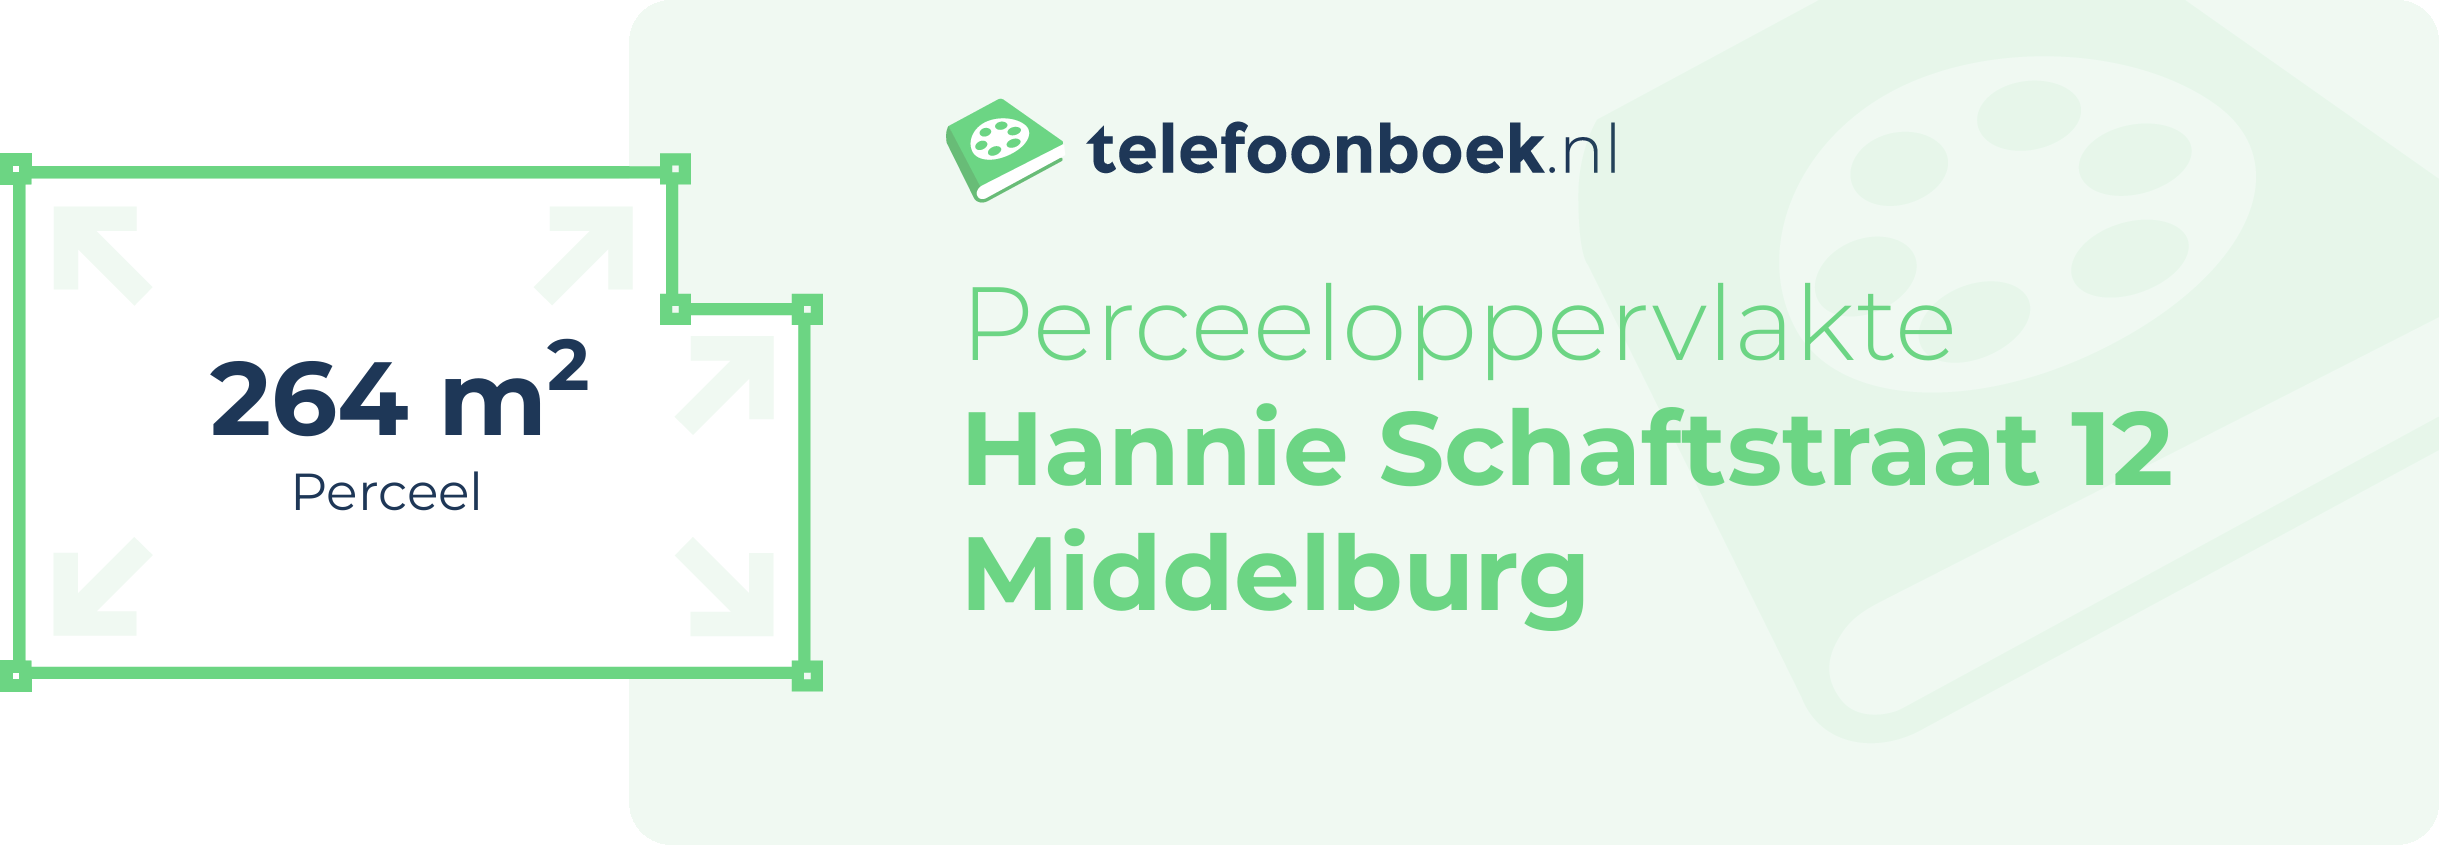 Perceeloppervlakte Hannie Schaftstraat 12 Middelburg